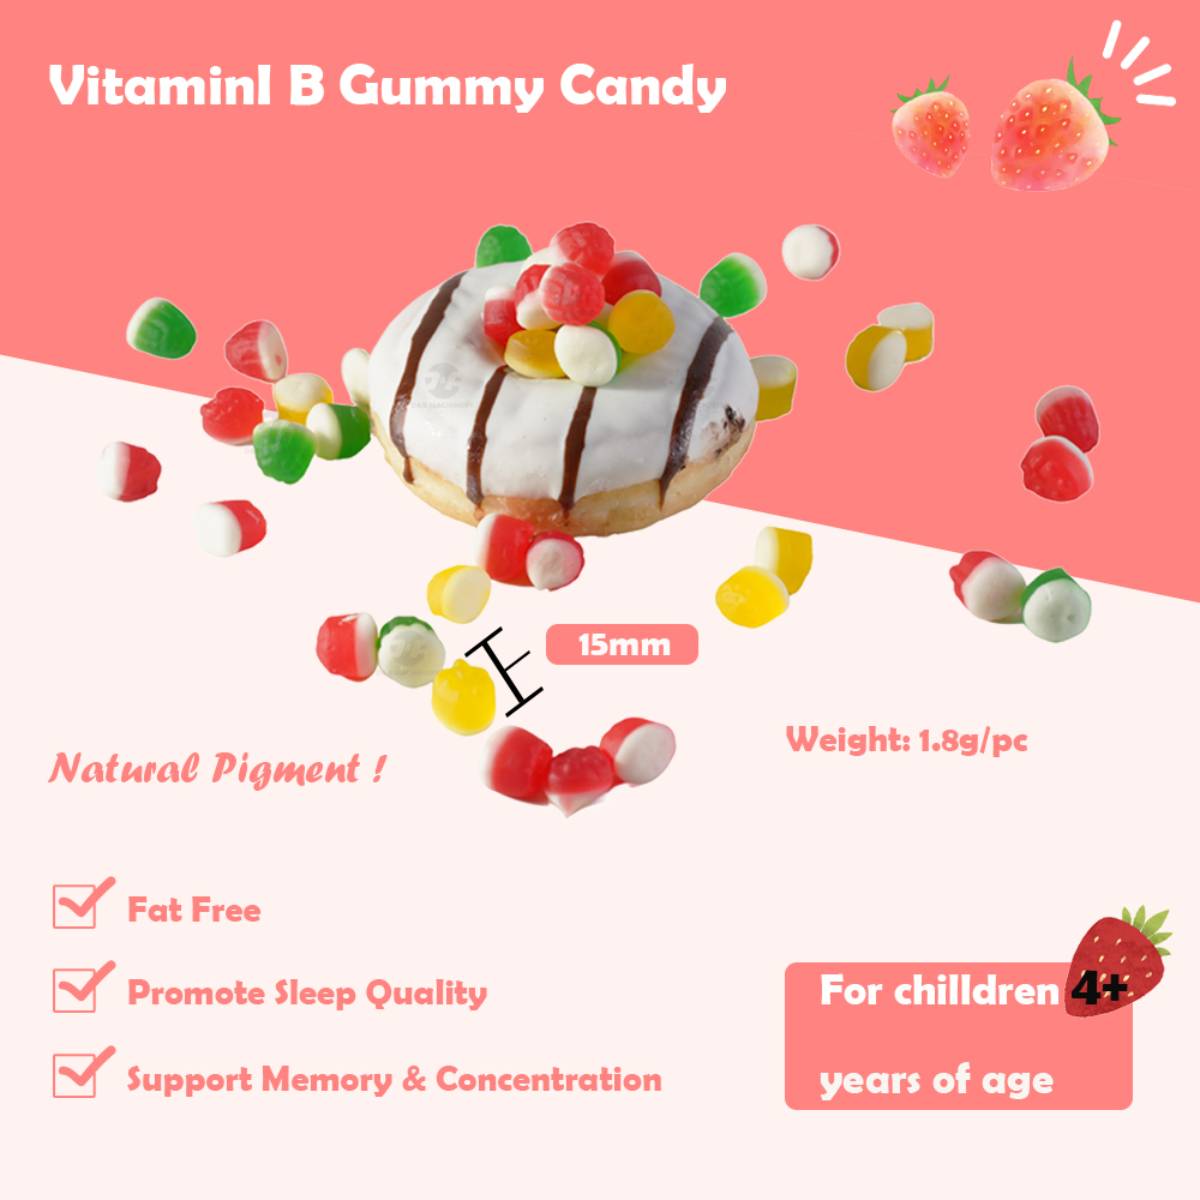 Vitamin B Gummy Candy